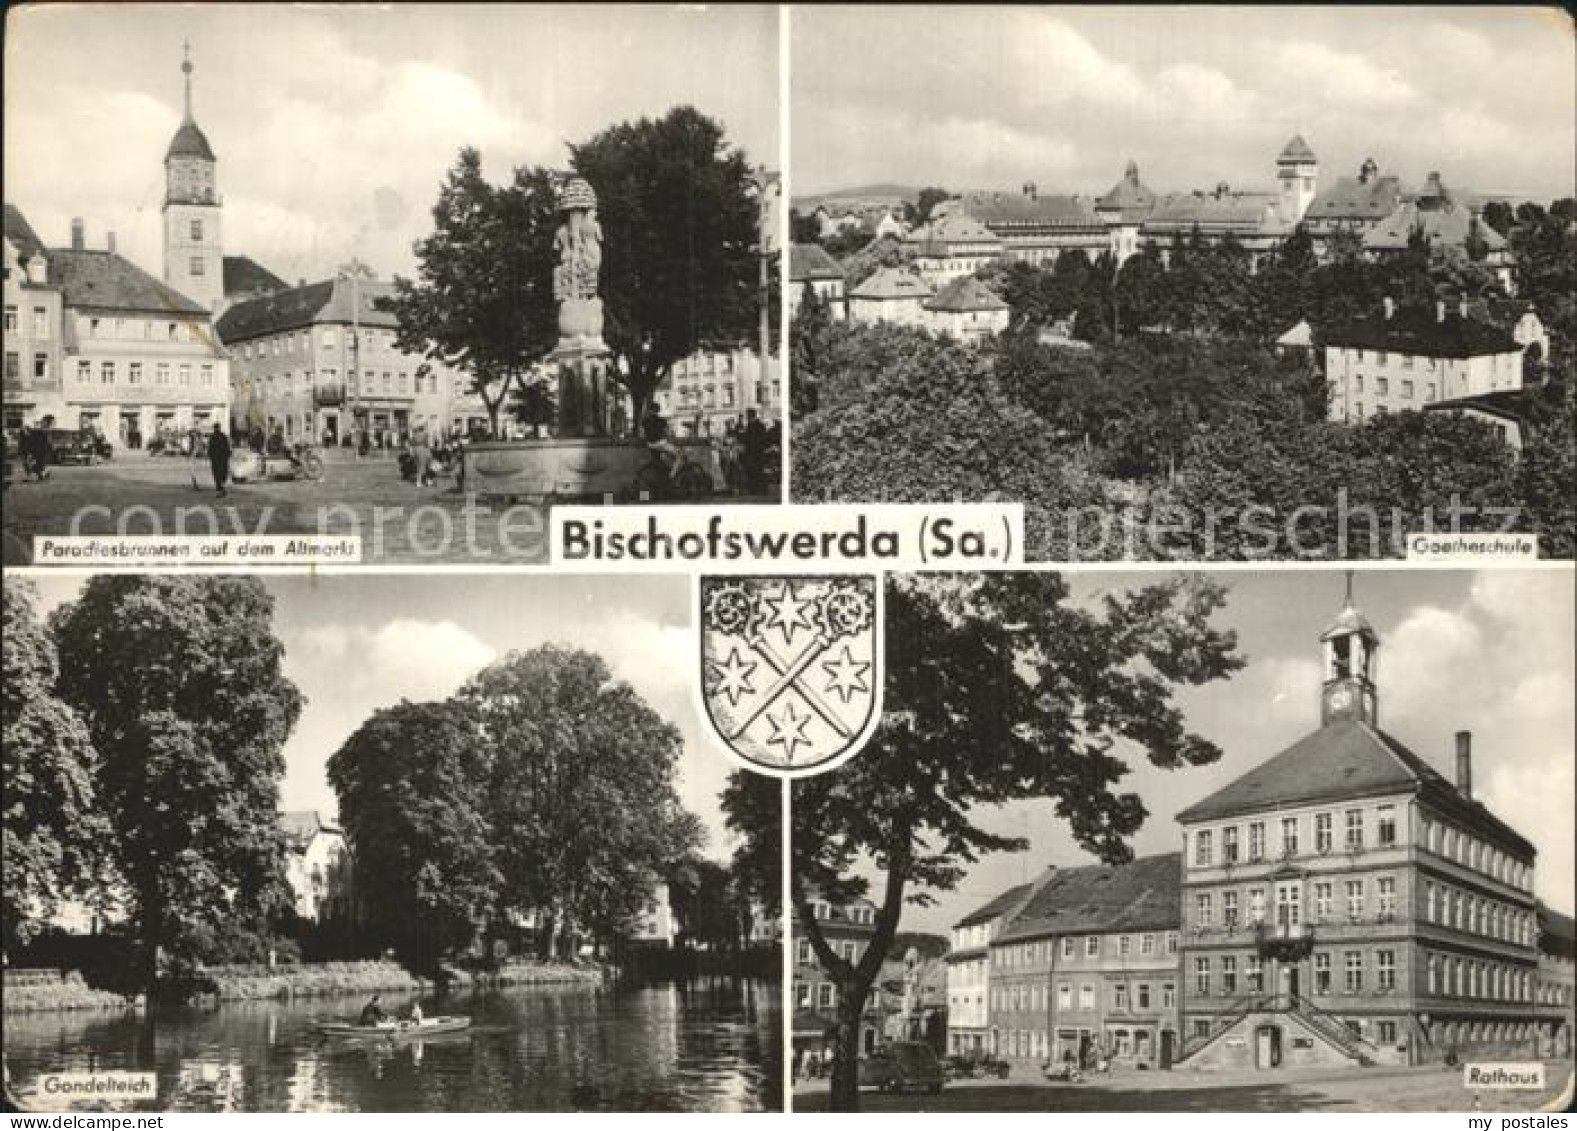 72343524 Bischofswerda Paradiesbrunnen Altmarkt Denkmal Goetheschule Rathaus Gon - Bischofswerda